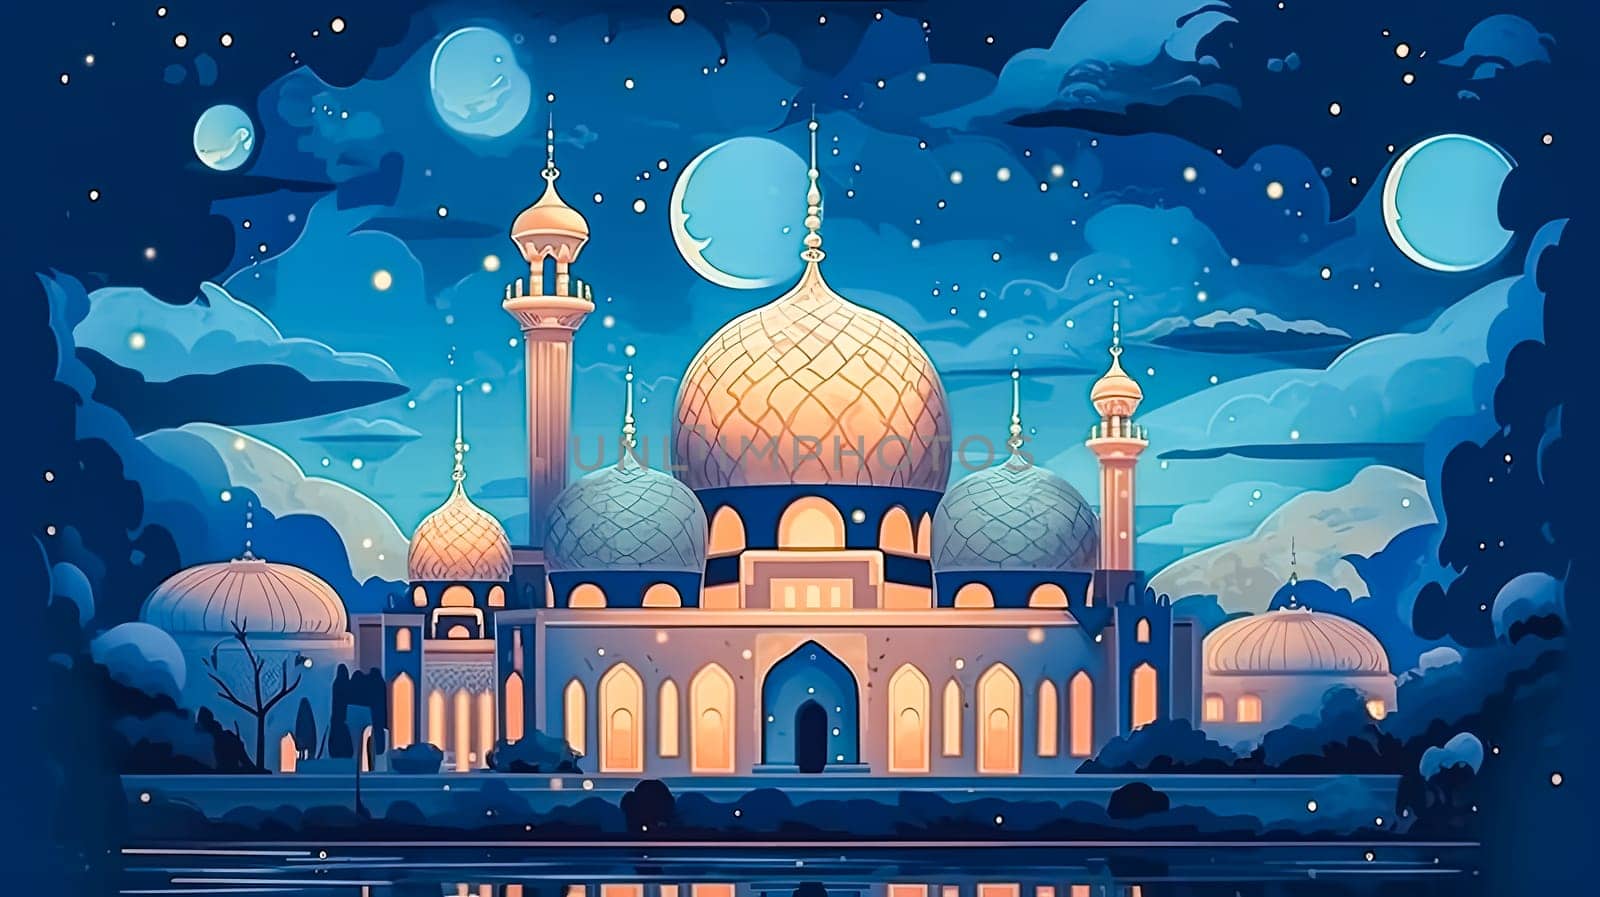 A mosque illuminated in celebration vibrant colors by Alla_Morozova93